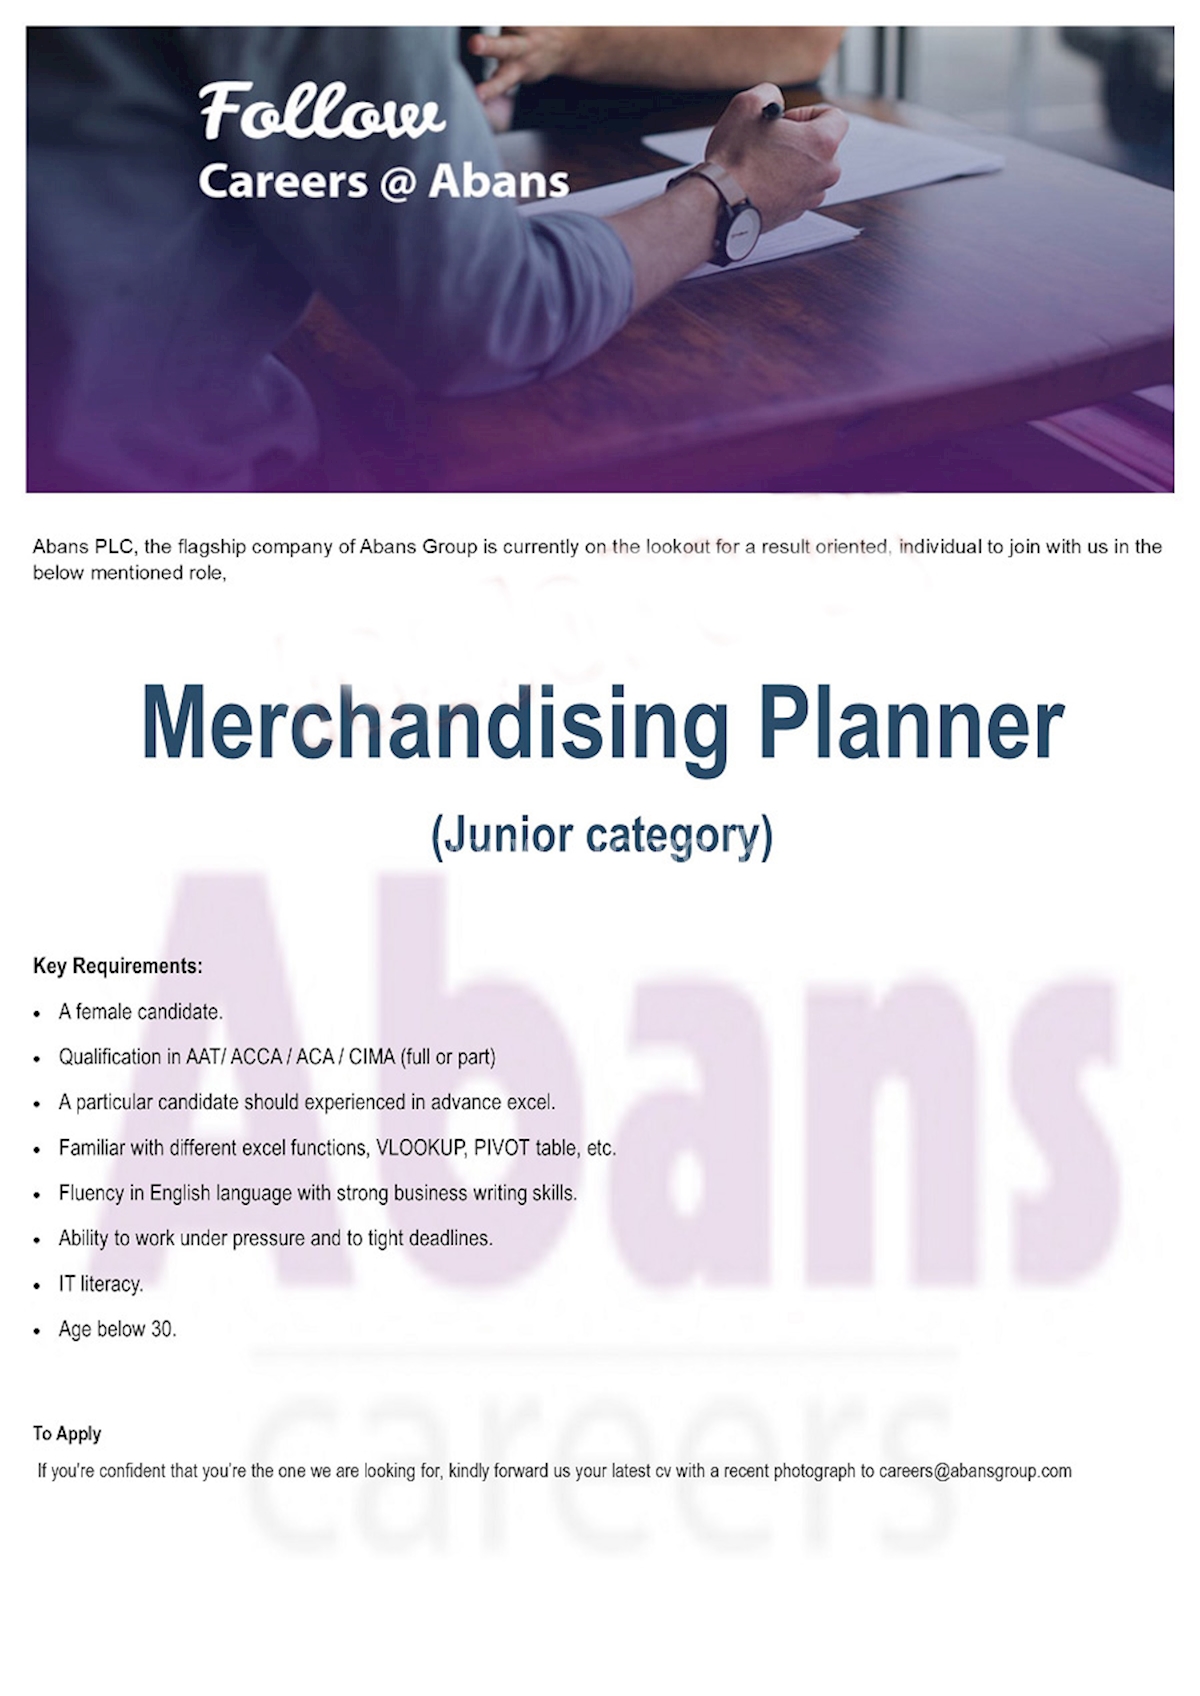 Merchandising Planner